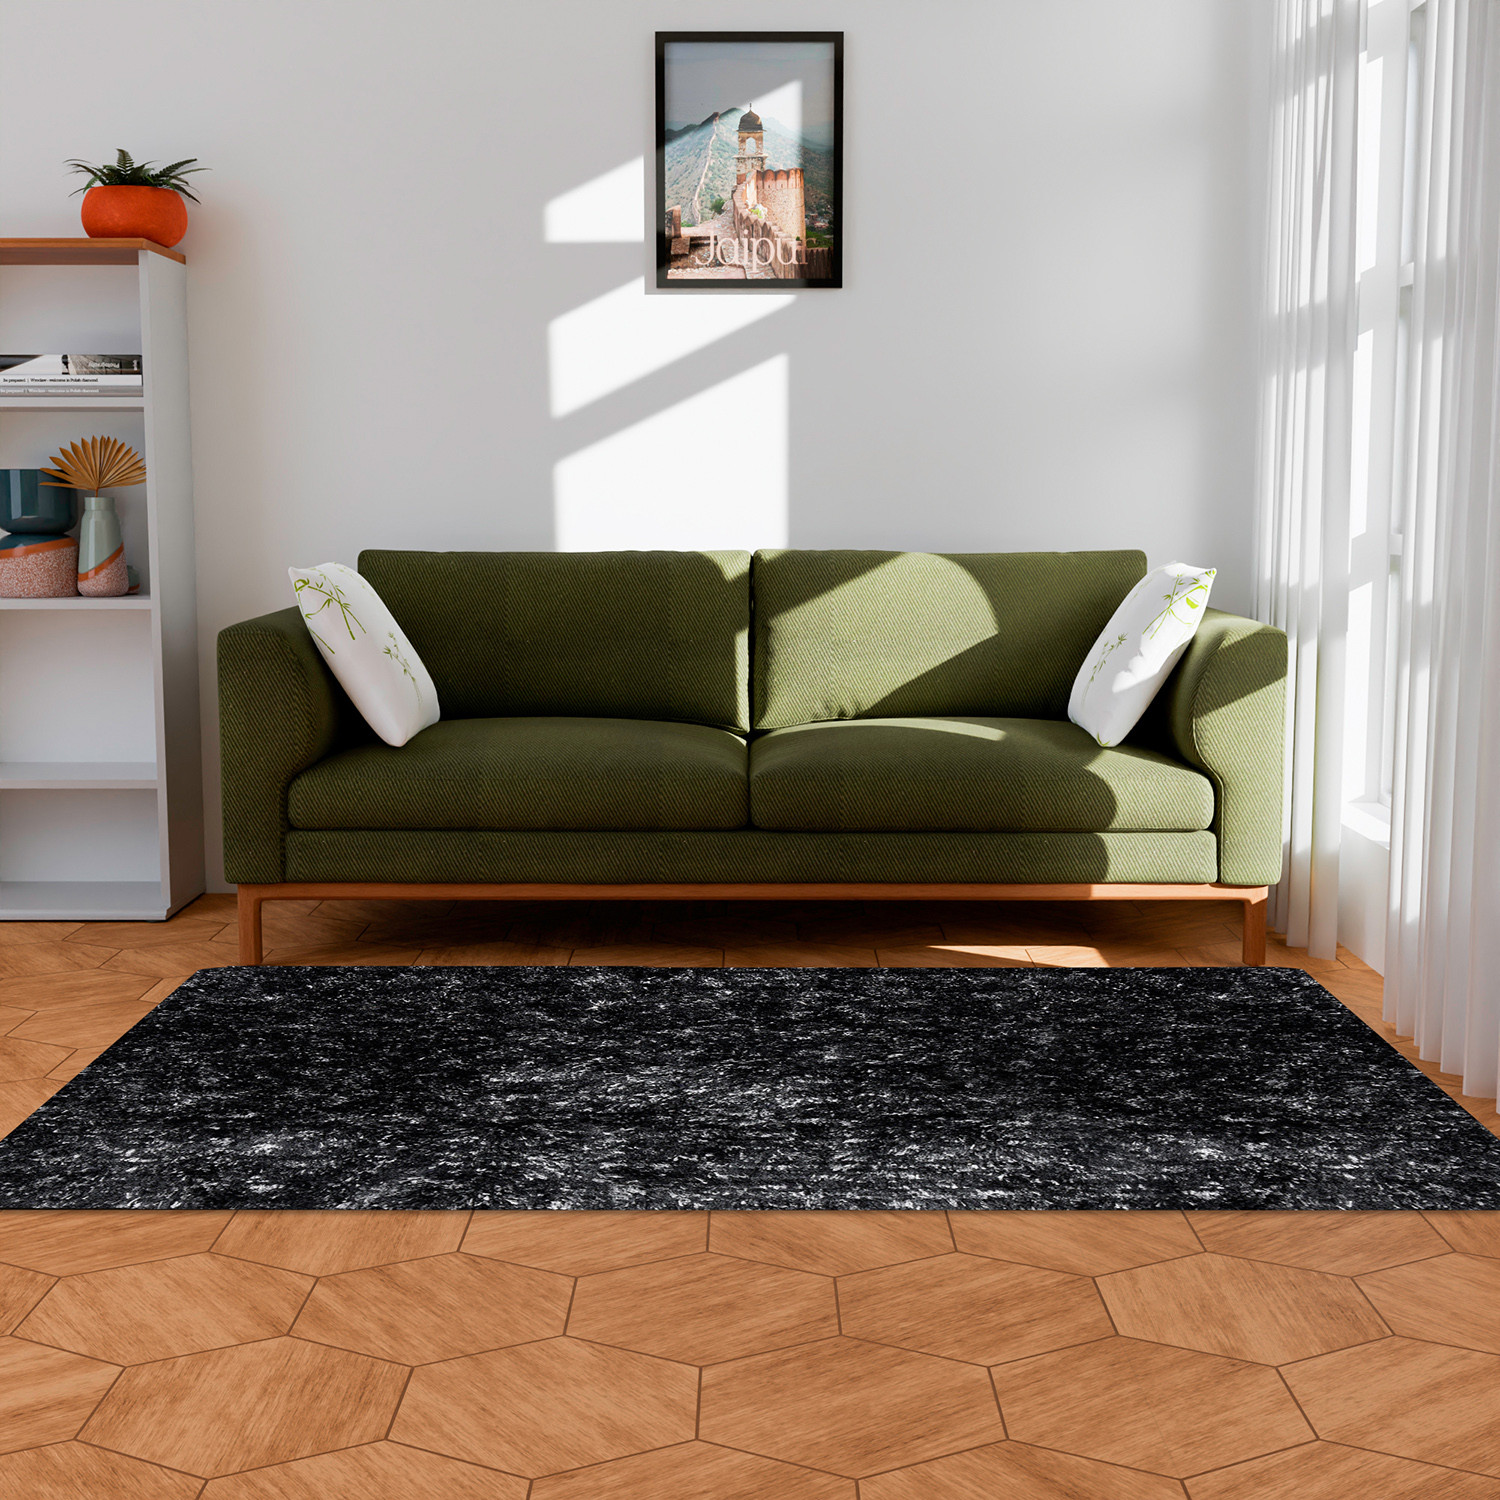 Kuber Industries Carpet | Shaggy Carpet for Living Room | Fluffy Carpet for Bedroom | Lexus Home Decor Carpet | Floor Carpet Rug | Non-Slip Bedside Rug | 3x5 Feet | Gray